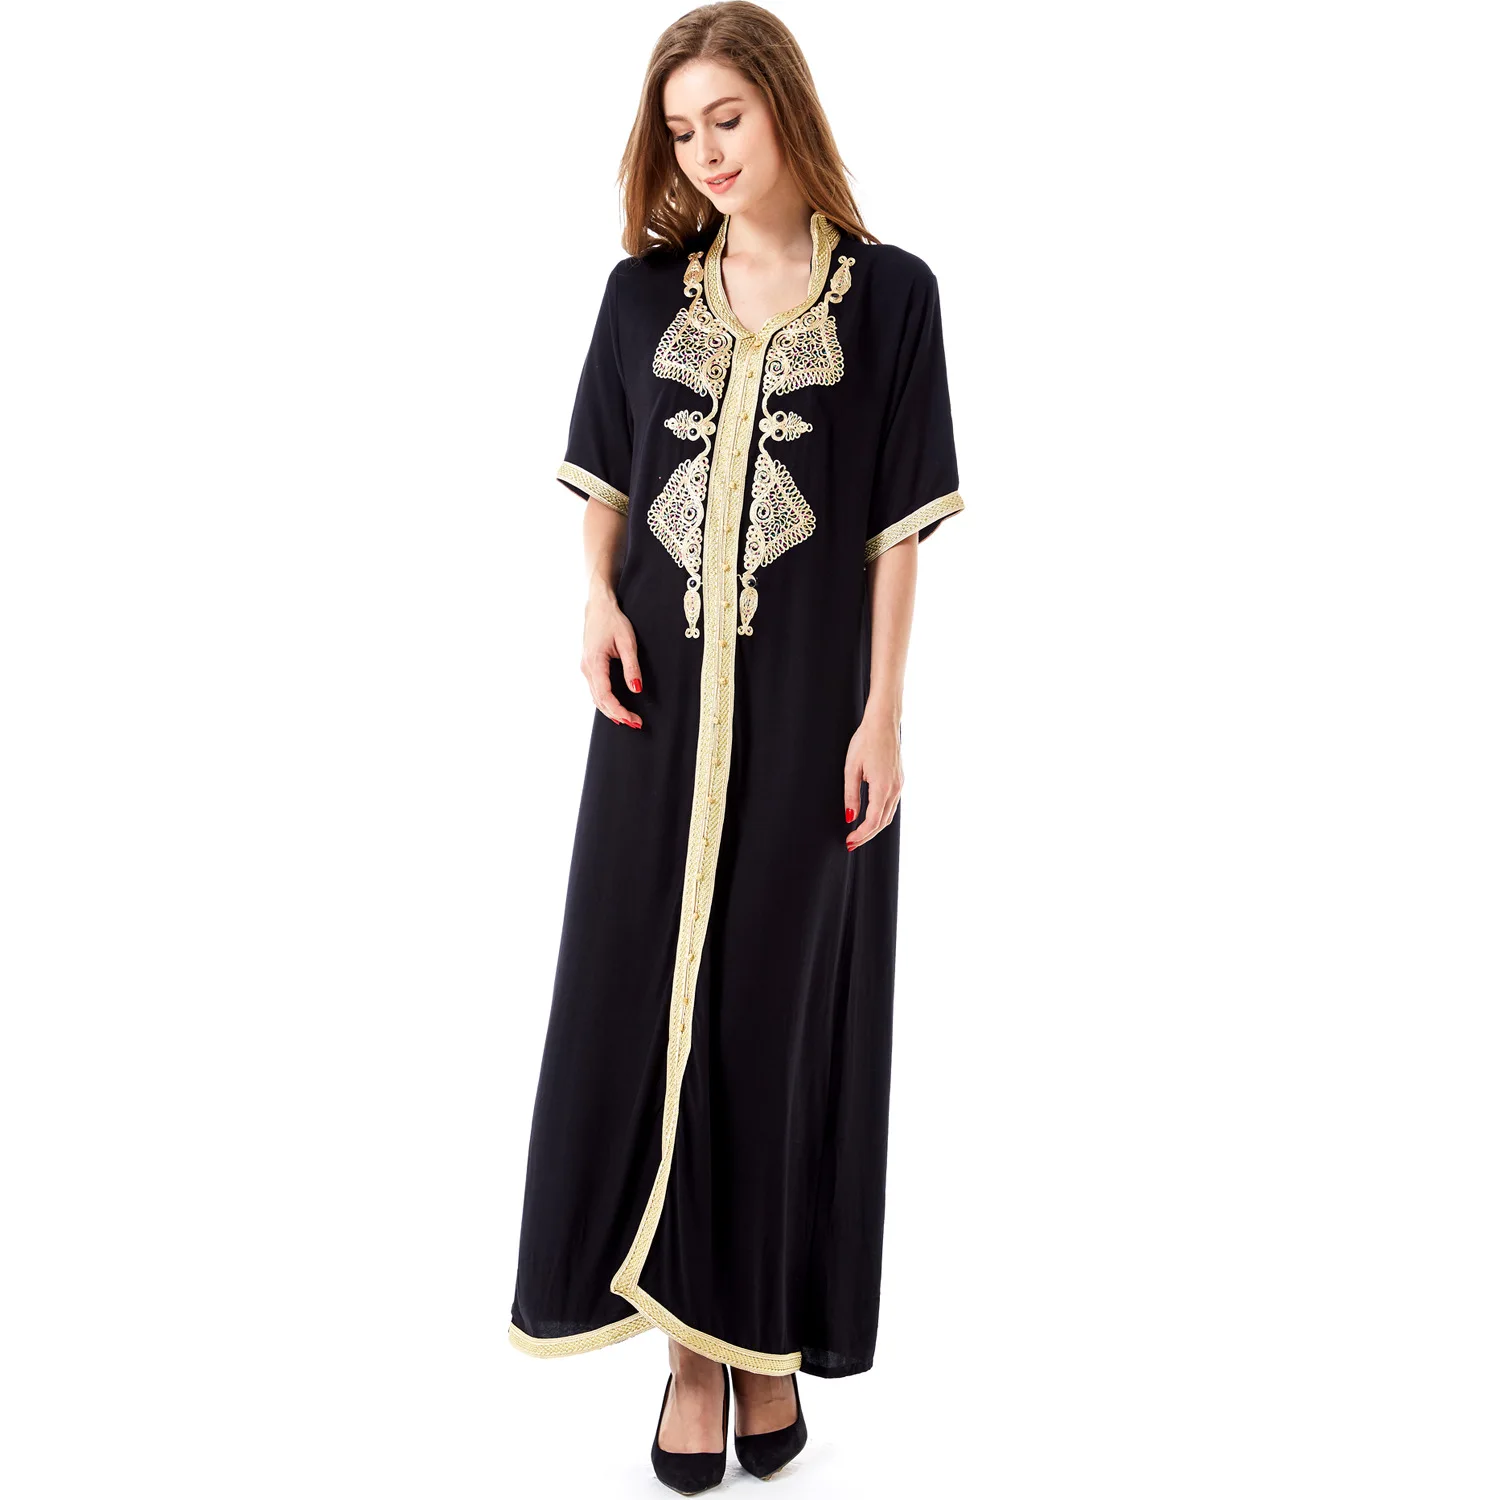 2021 мусульманская длинная юбка на Среднем Востоке, платье с вышивкой, арабское женское свободное платье с коротким рукавом, кафтан